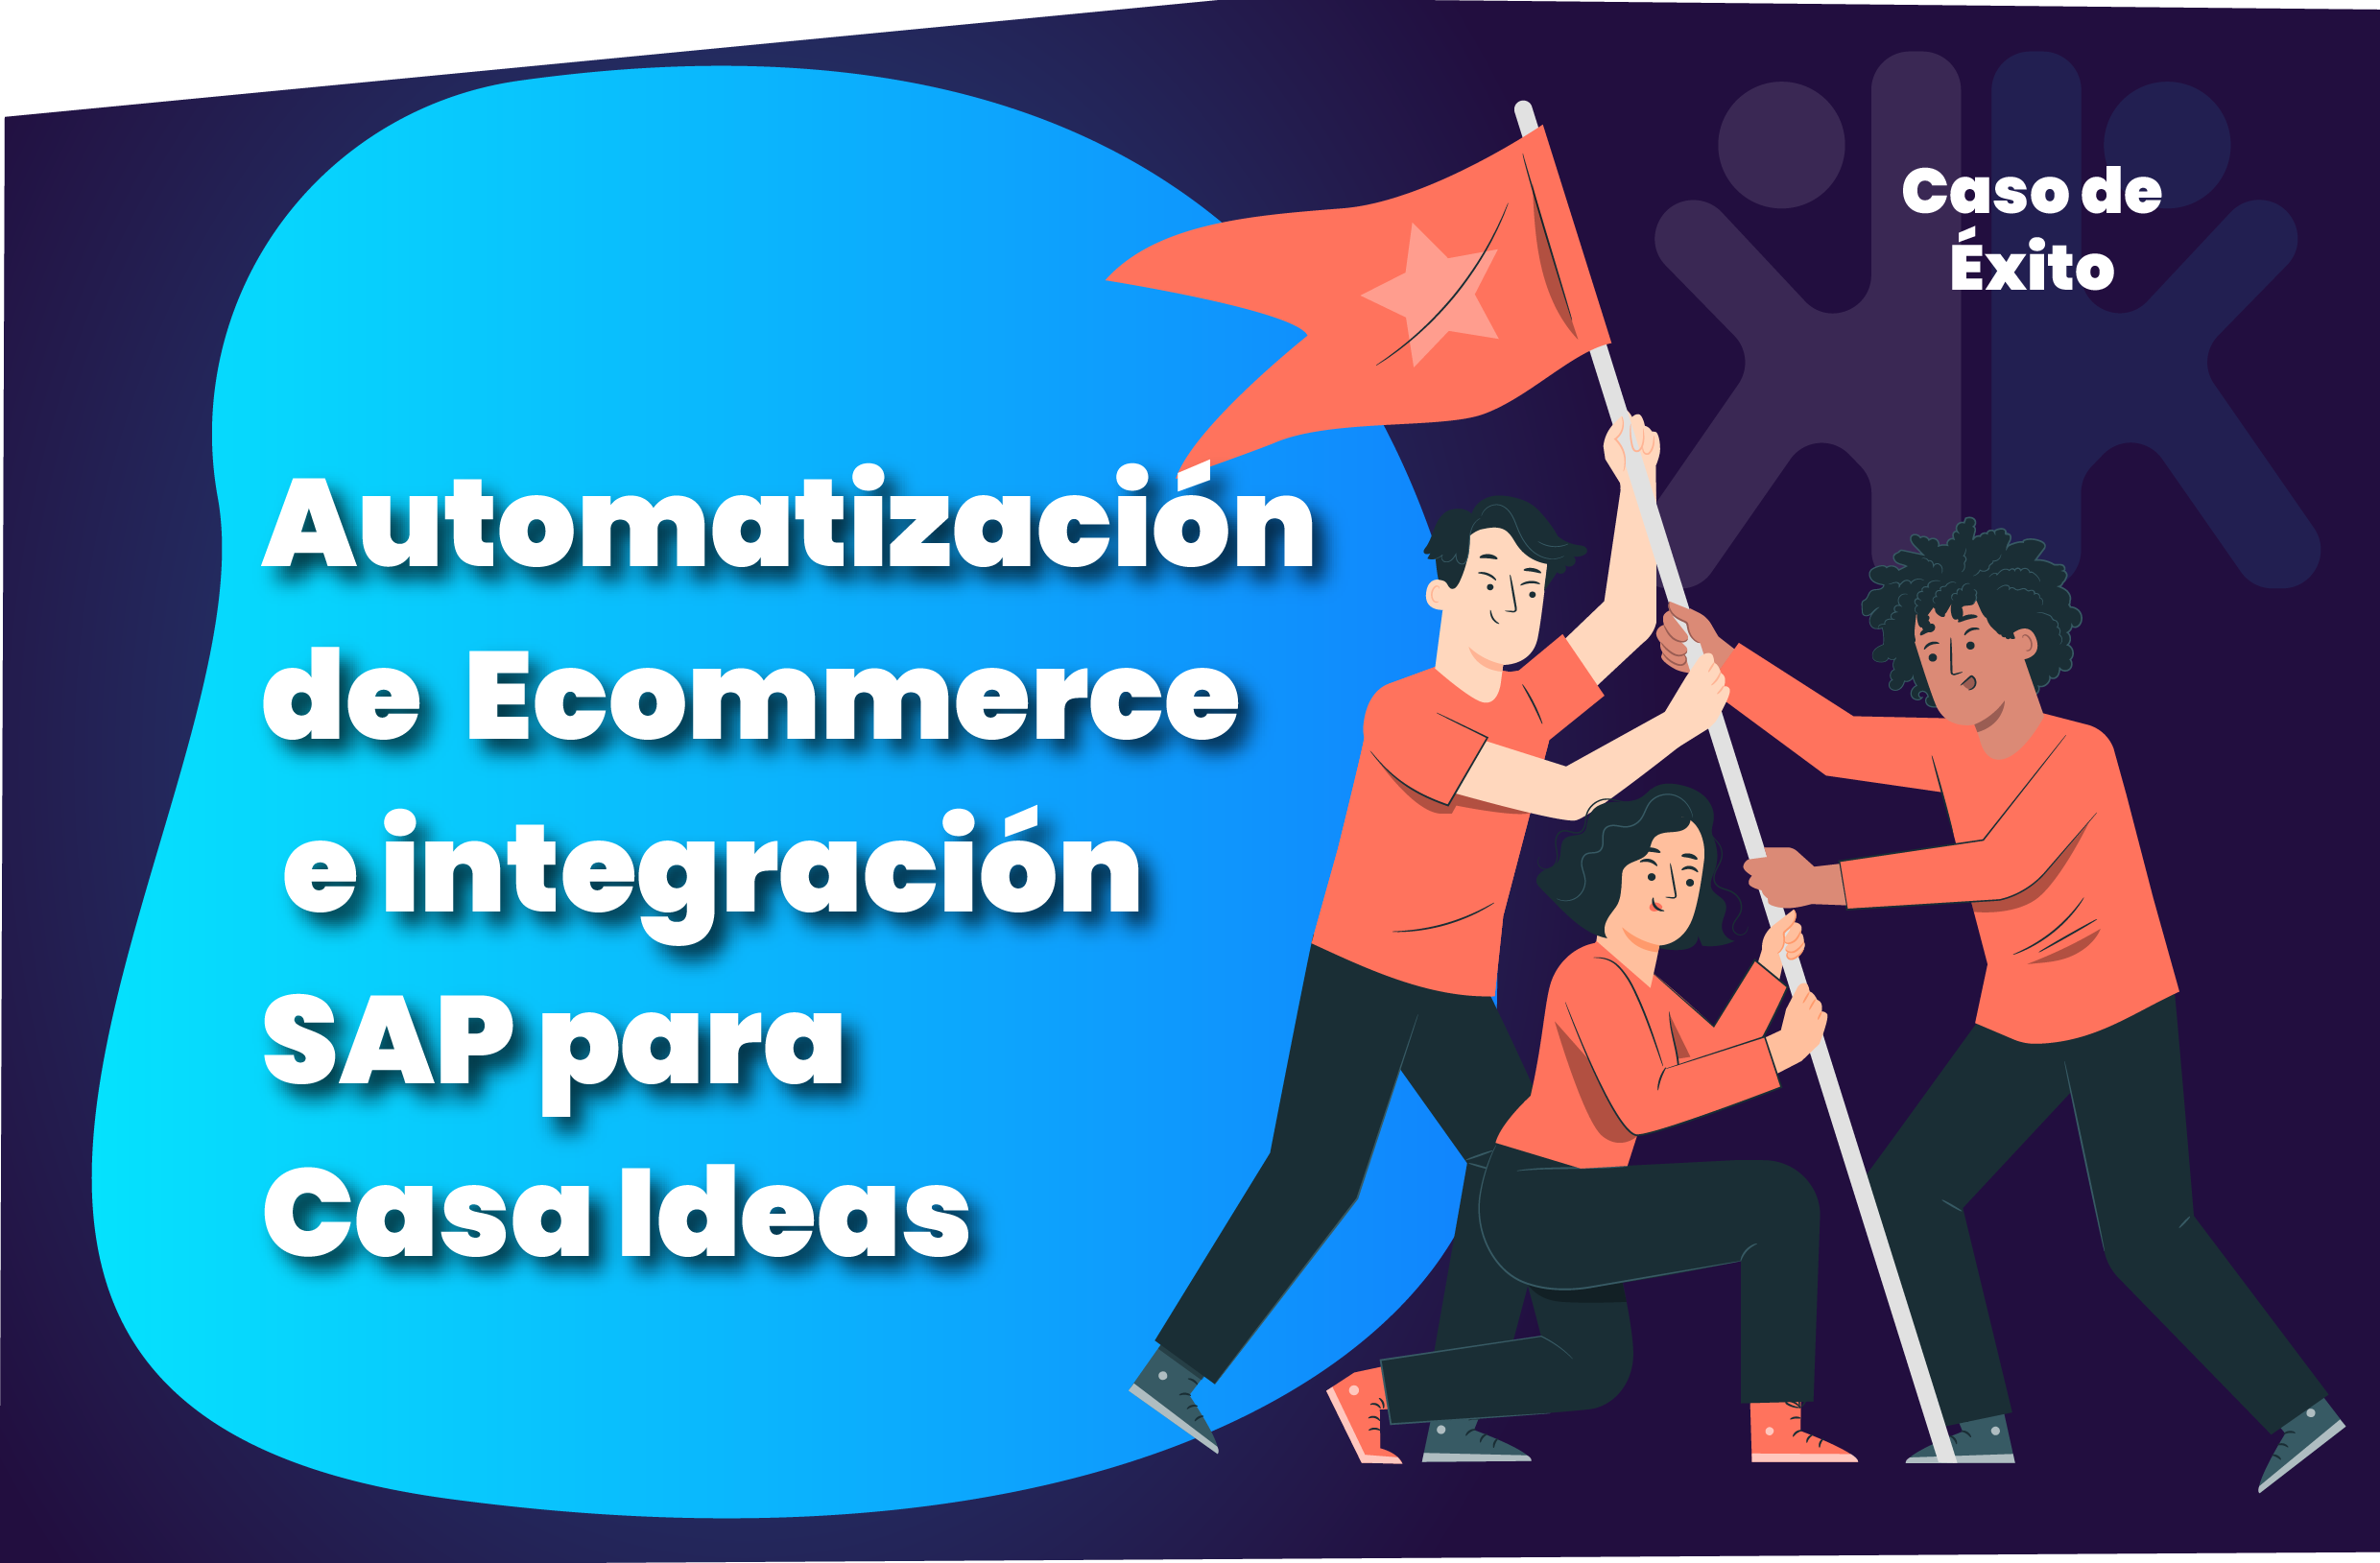 Cómo Casaideas logró automatizar su flujo de ecommerce e integraciones SAP y Magento con Haka Lab